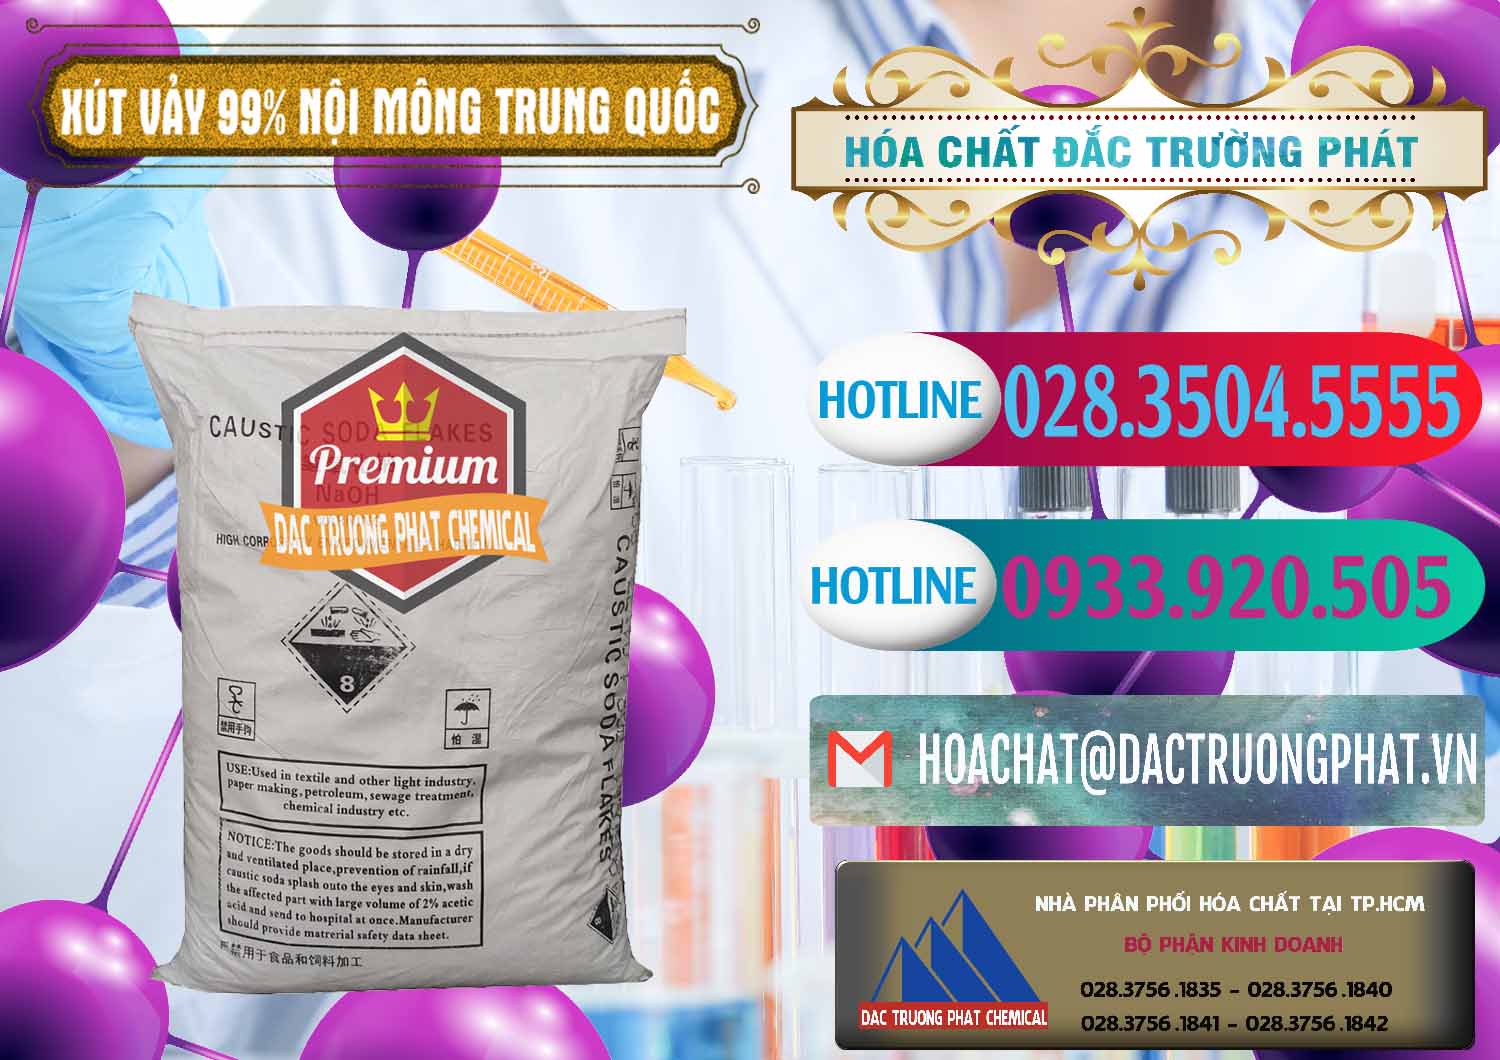 Đơn vị chuyên nhập khẩu - bán Xút Vảy - NaOH Vảy 99% Nội Mông Trung Quốc China - 0228 - Cty cung cấp & bán hóa chất tại TP.HCM - truongphat.vn